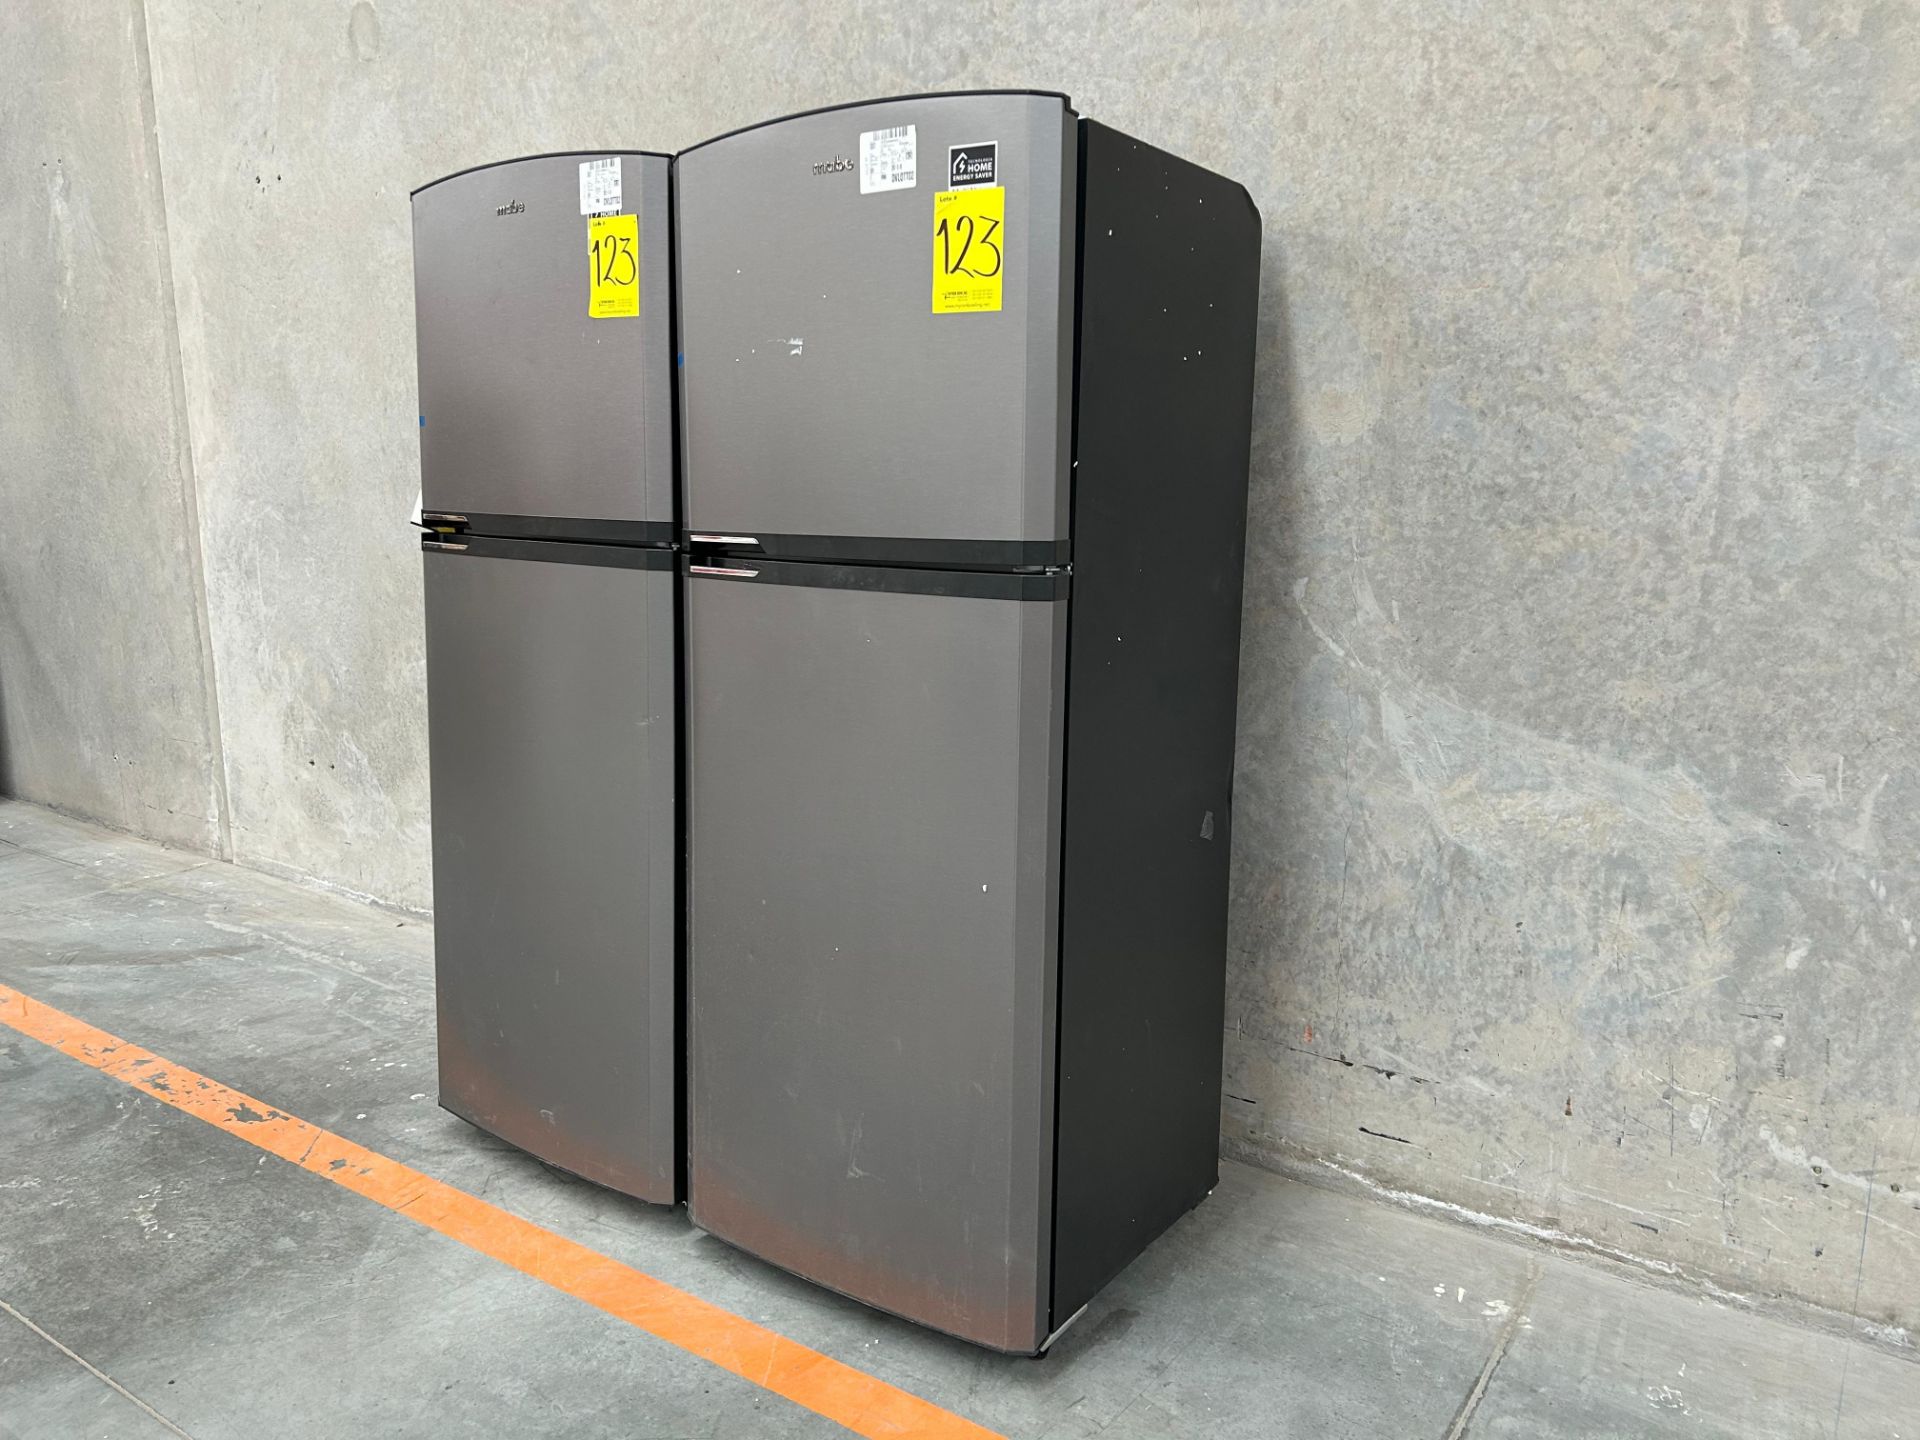 Lote de 2 Refrigeradores contiene: 1 Refrigerador Marca MABE, Modelo RME360PVMRM0, Serie 21969, Col - Image 2 of 15